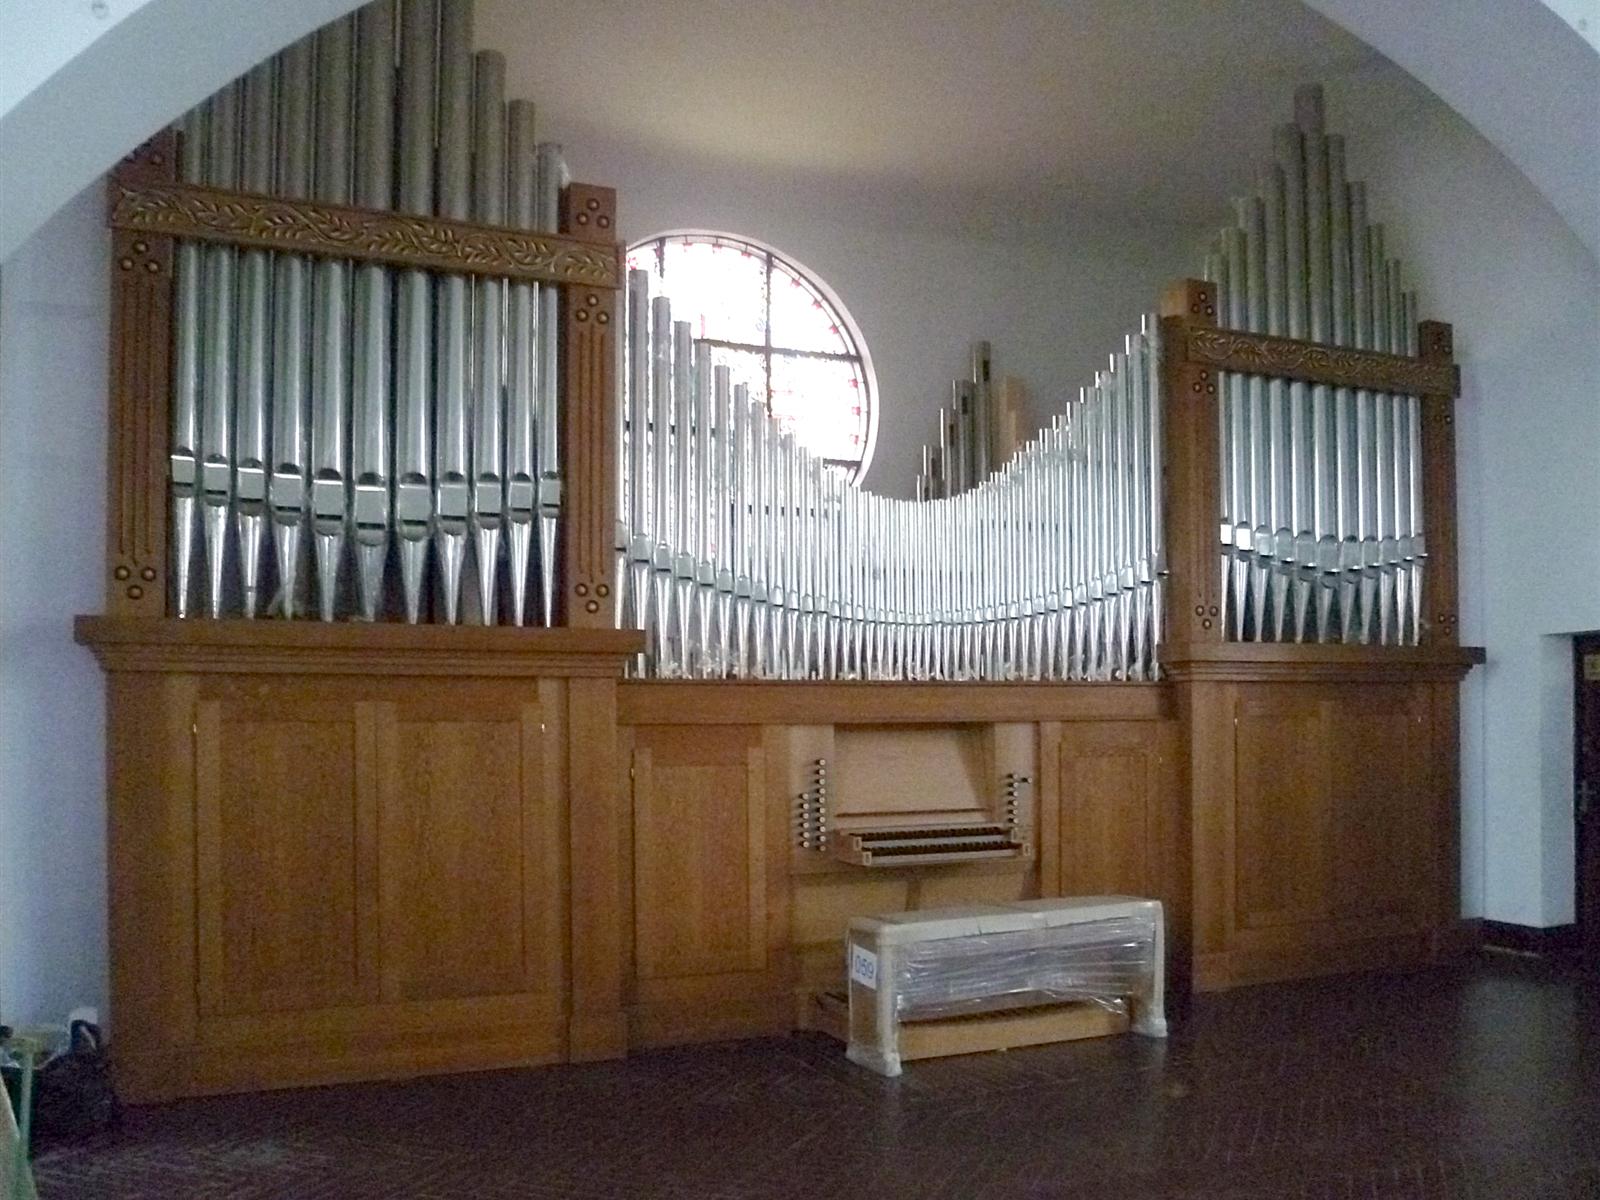 有人知道青岛江苏路基督教堂那架机械式管风琴吗?